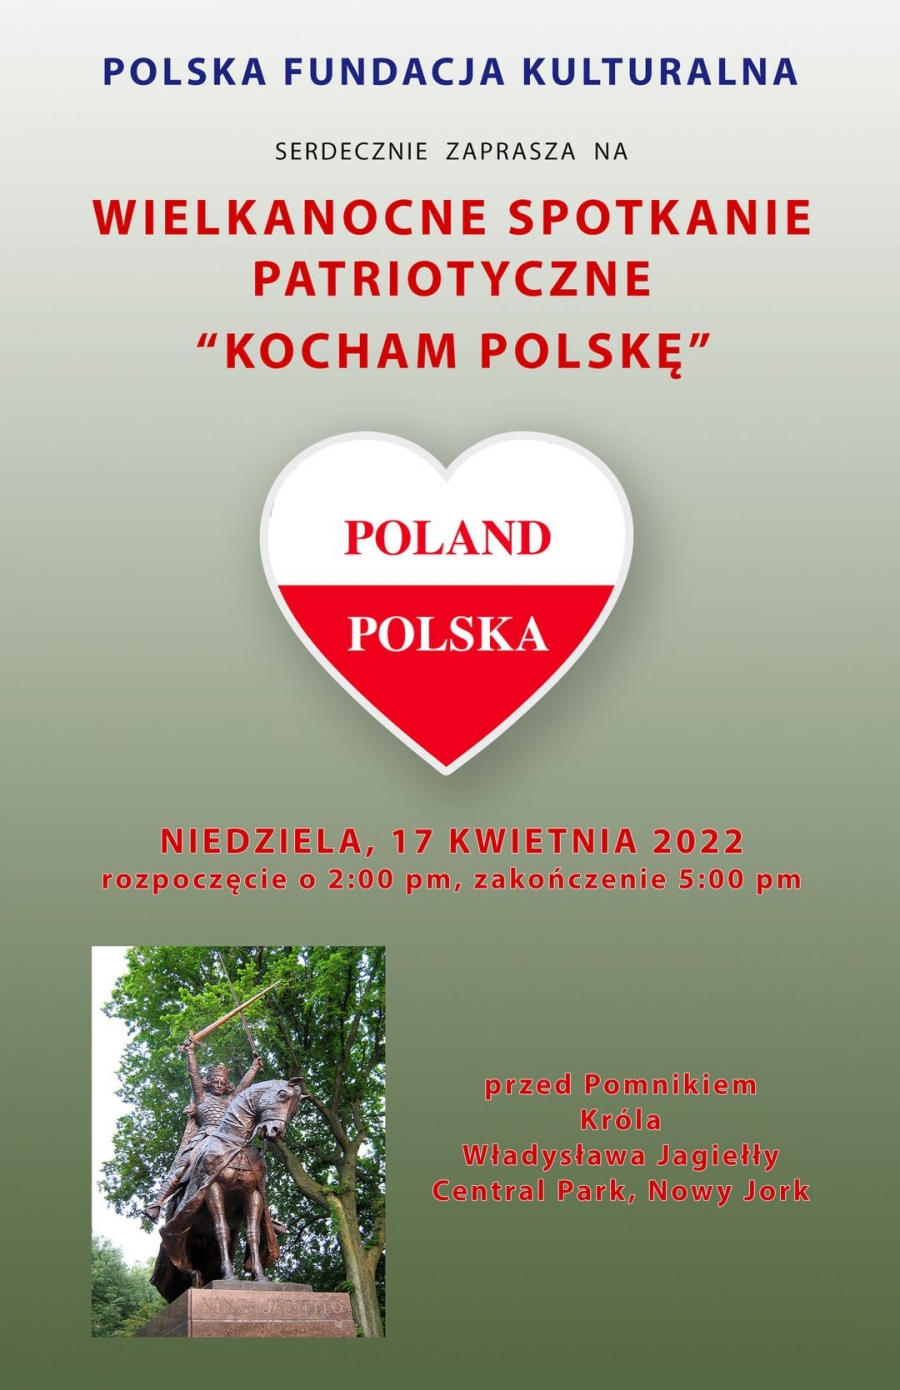 Wielkanocne Spotkanie Patriotyczne "Kocham Polskę".